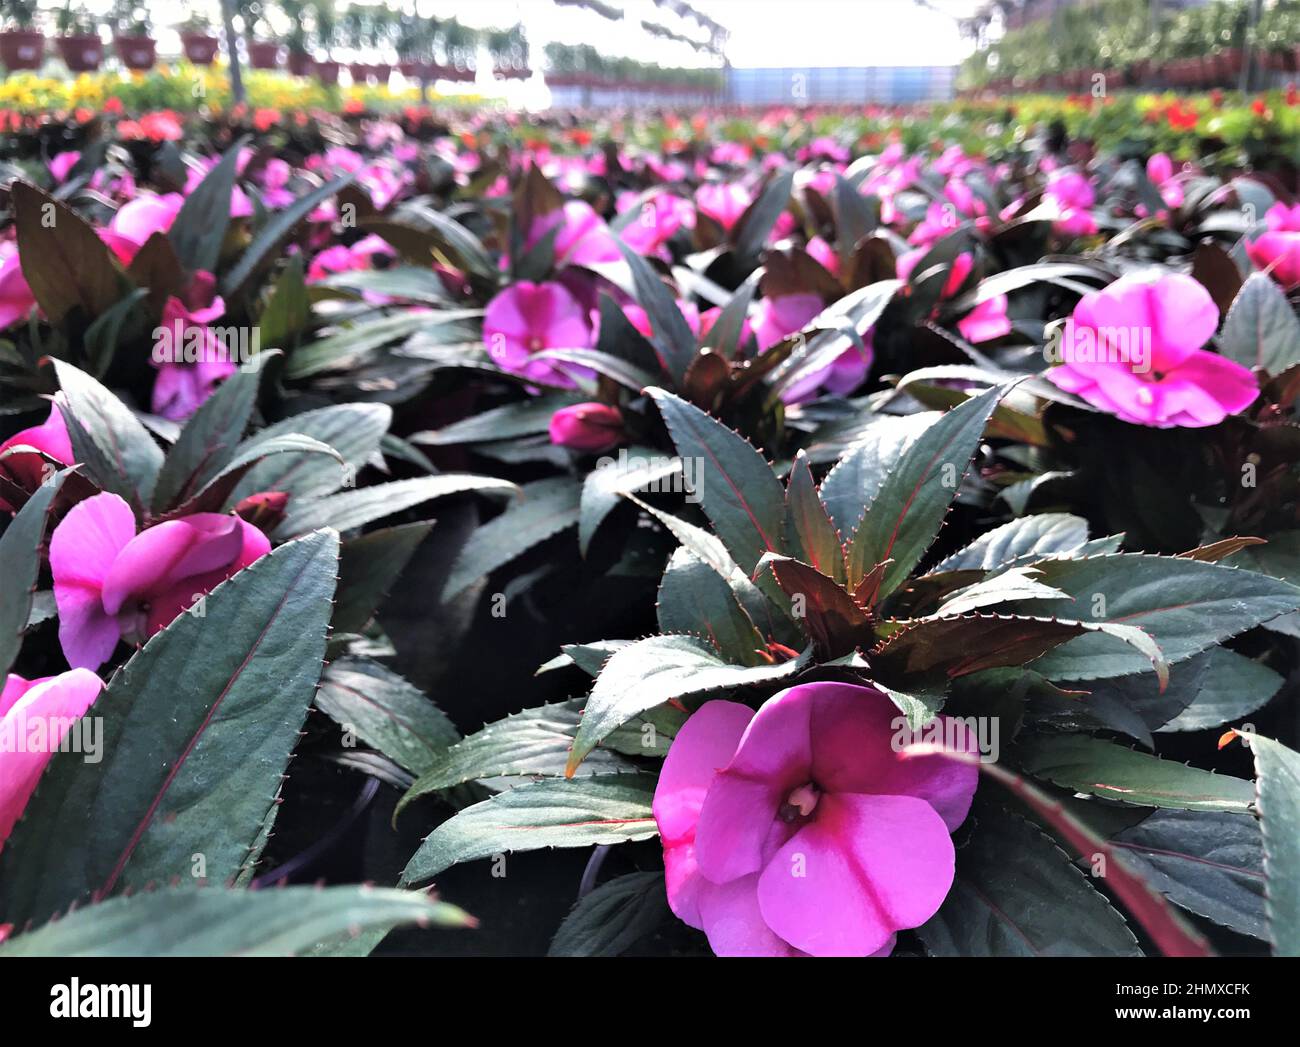 Primer plano de flores balsámicas de color rosa brillante con hojas de color verde oscuro cultivadas en macetas en un invernadero. Foto de stock